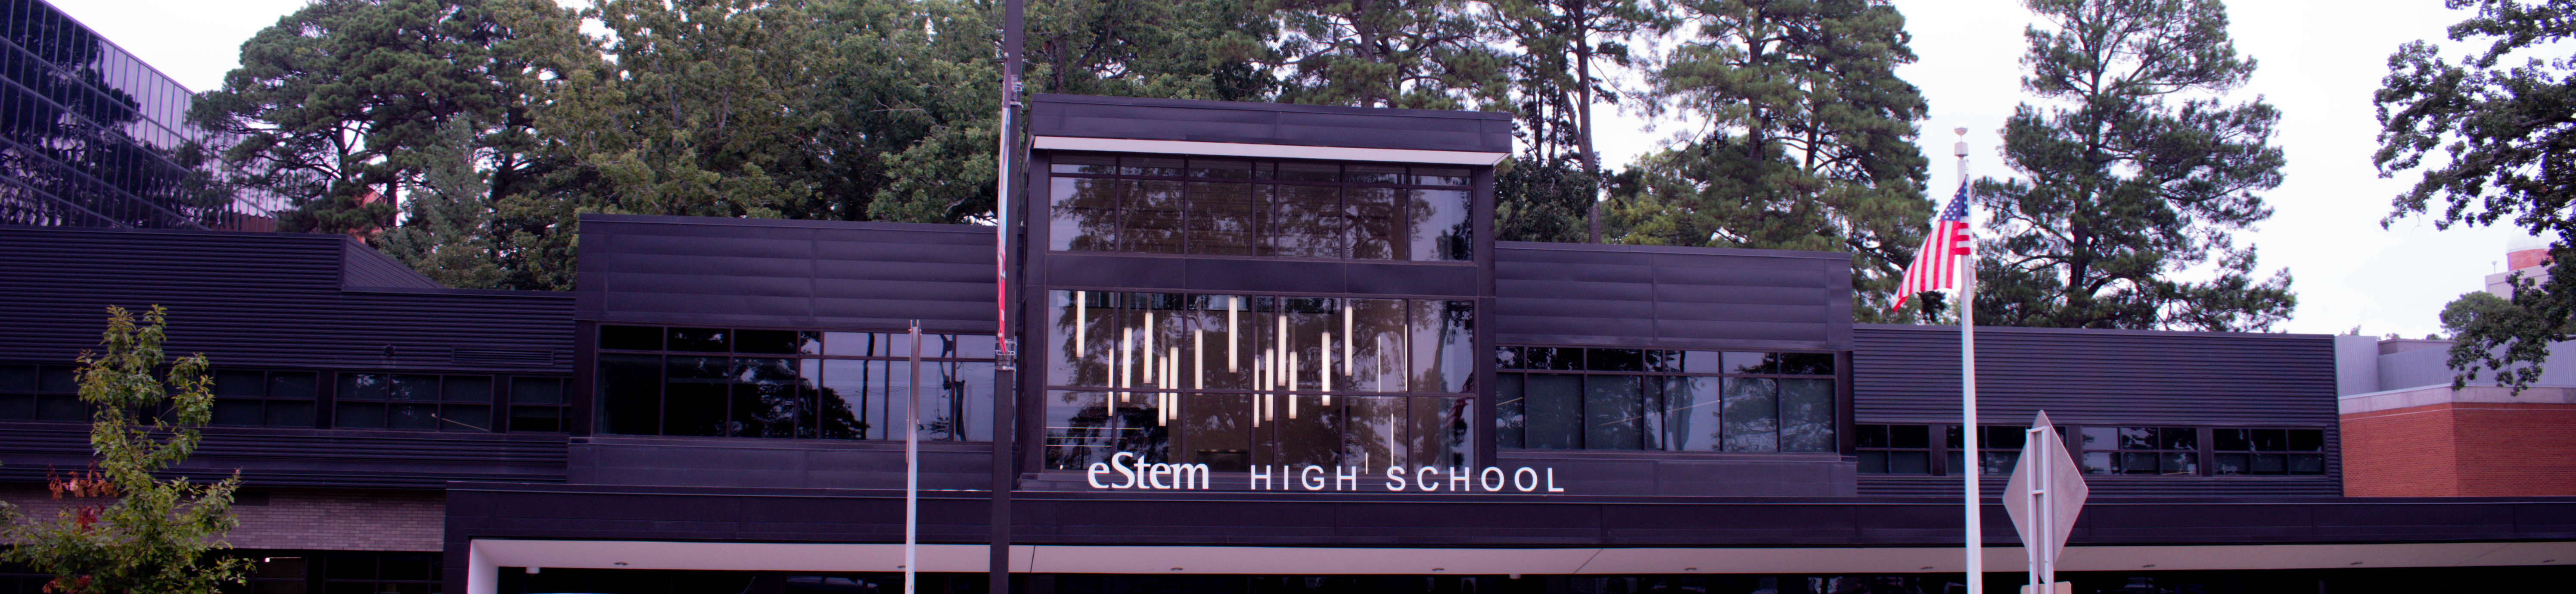 eStem High School